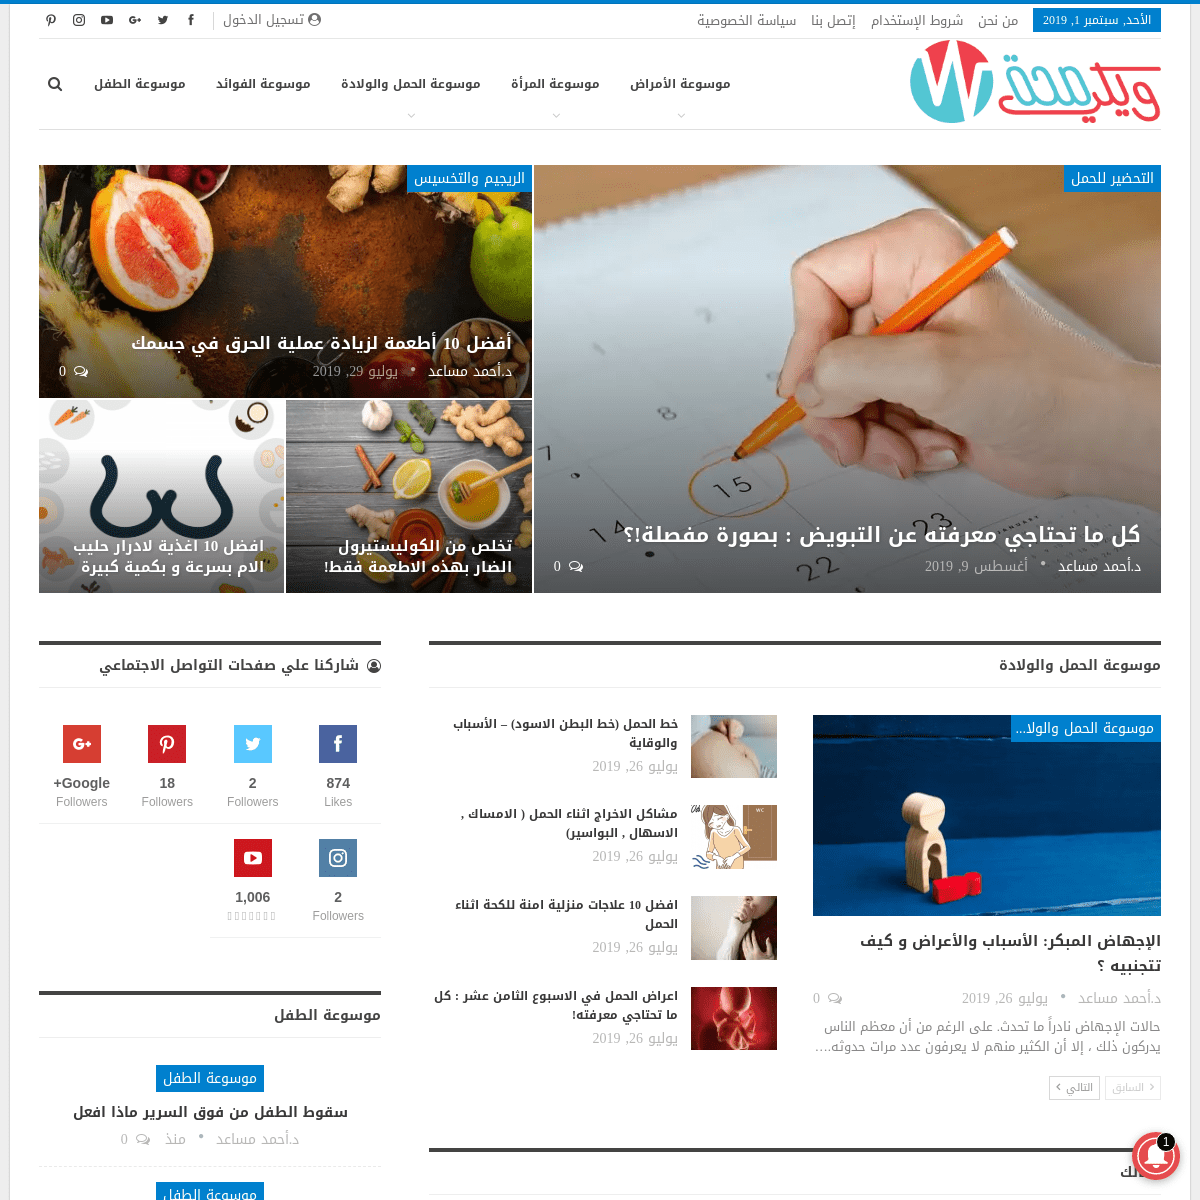 ويكي صحة - موسوعة الصحة العربية